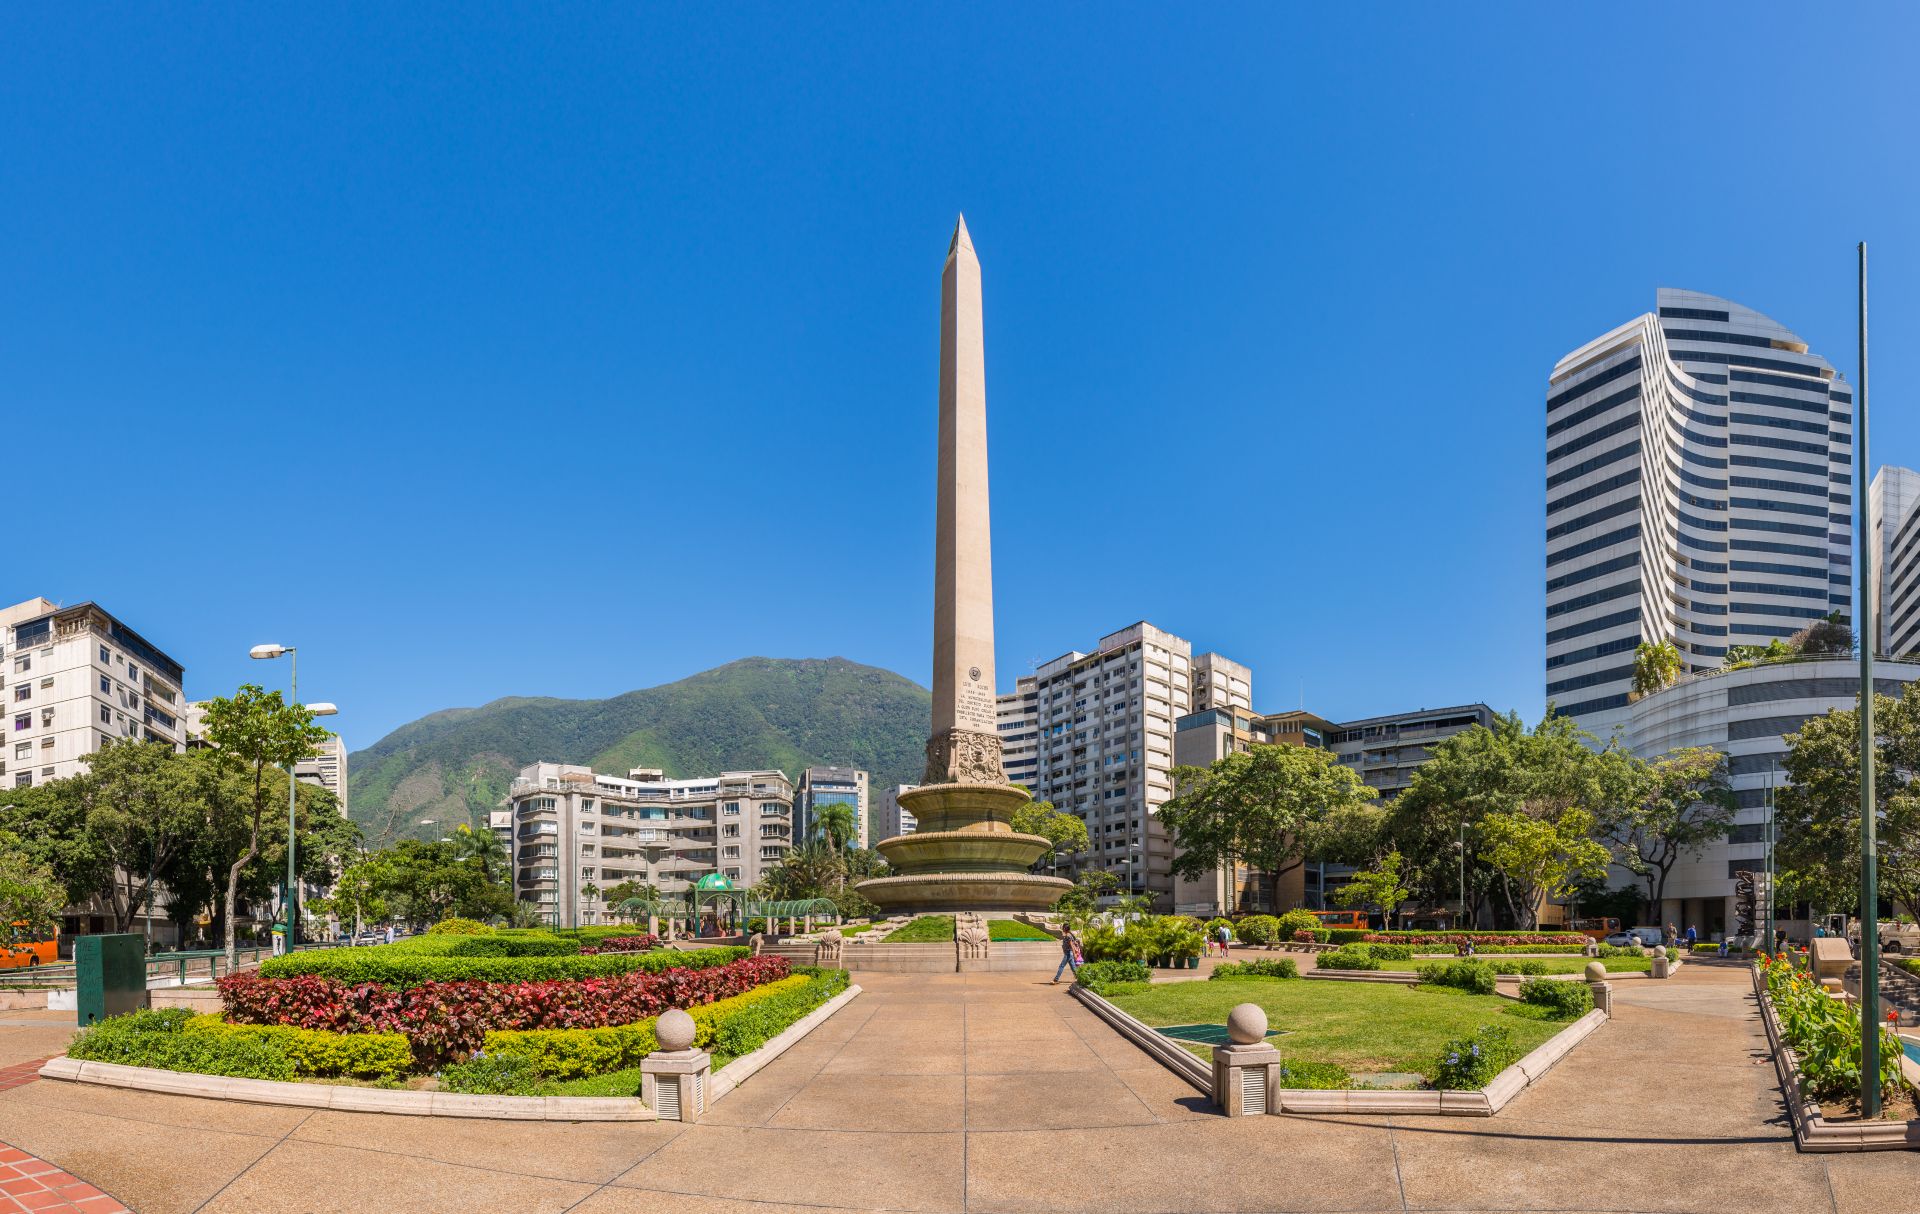 弗朗西亚广场（又称阿尔塔米拉广场），位于委内瑞拉首都加拉加斯。